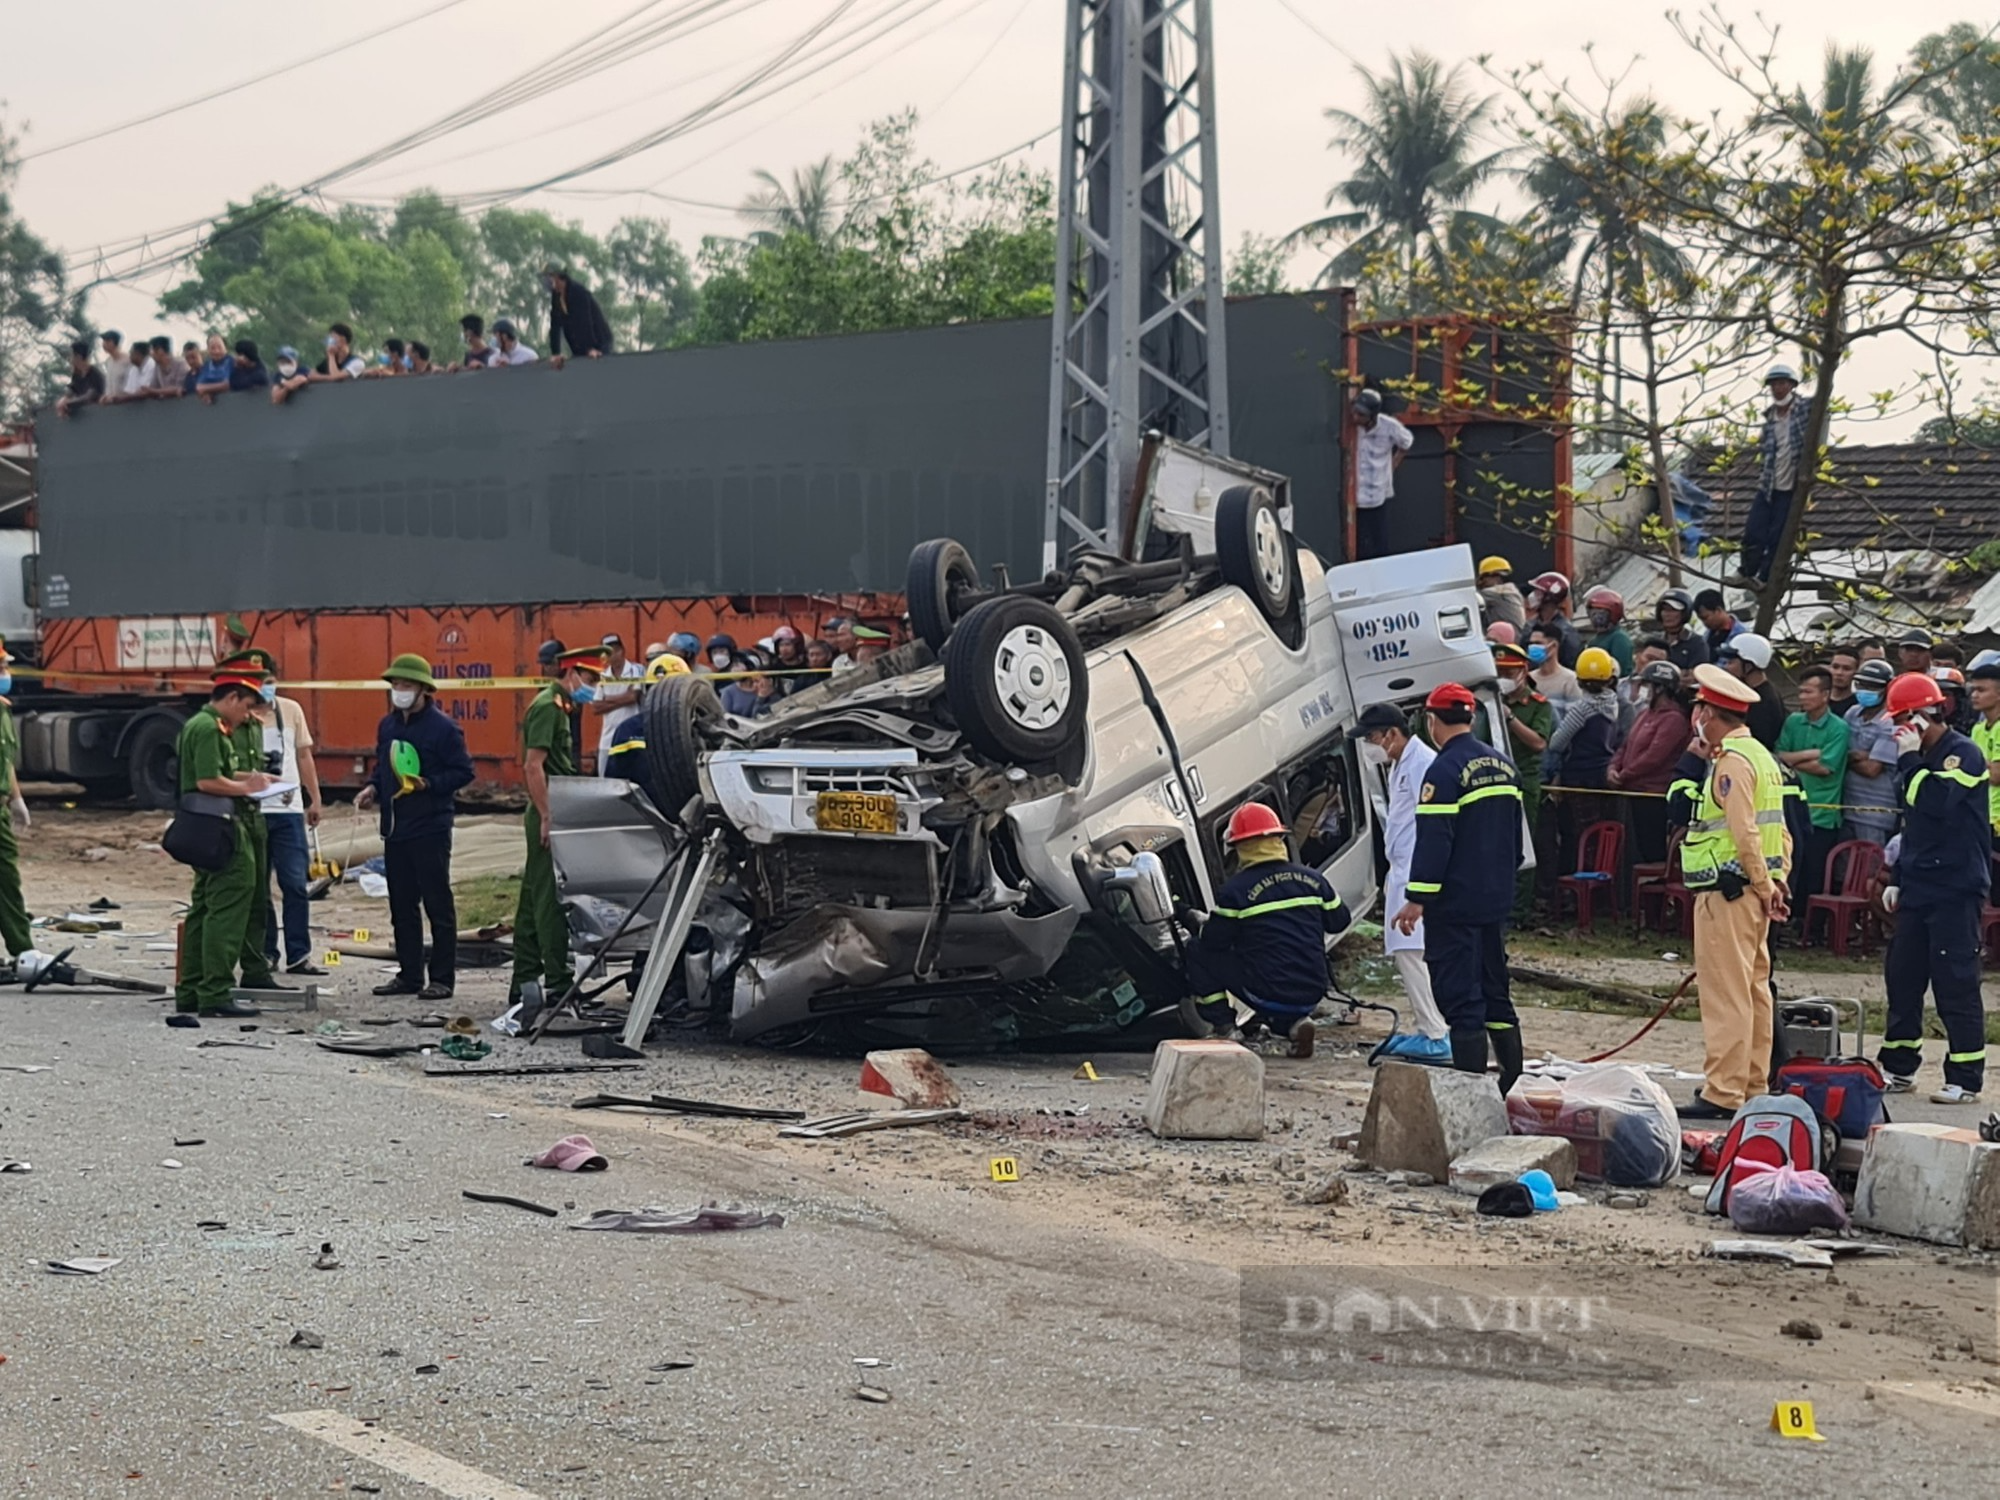 Quảng Nam sẽ “họp khẩn” tìm nguyên nhân sau 2 vụ tai nạn nghiêm trọng làm 13 người tử vong - Ảnh 1.